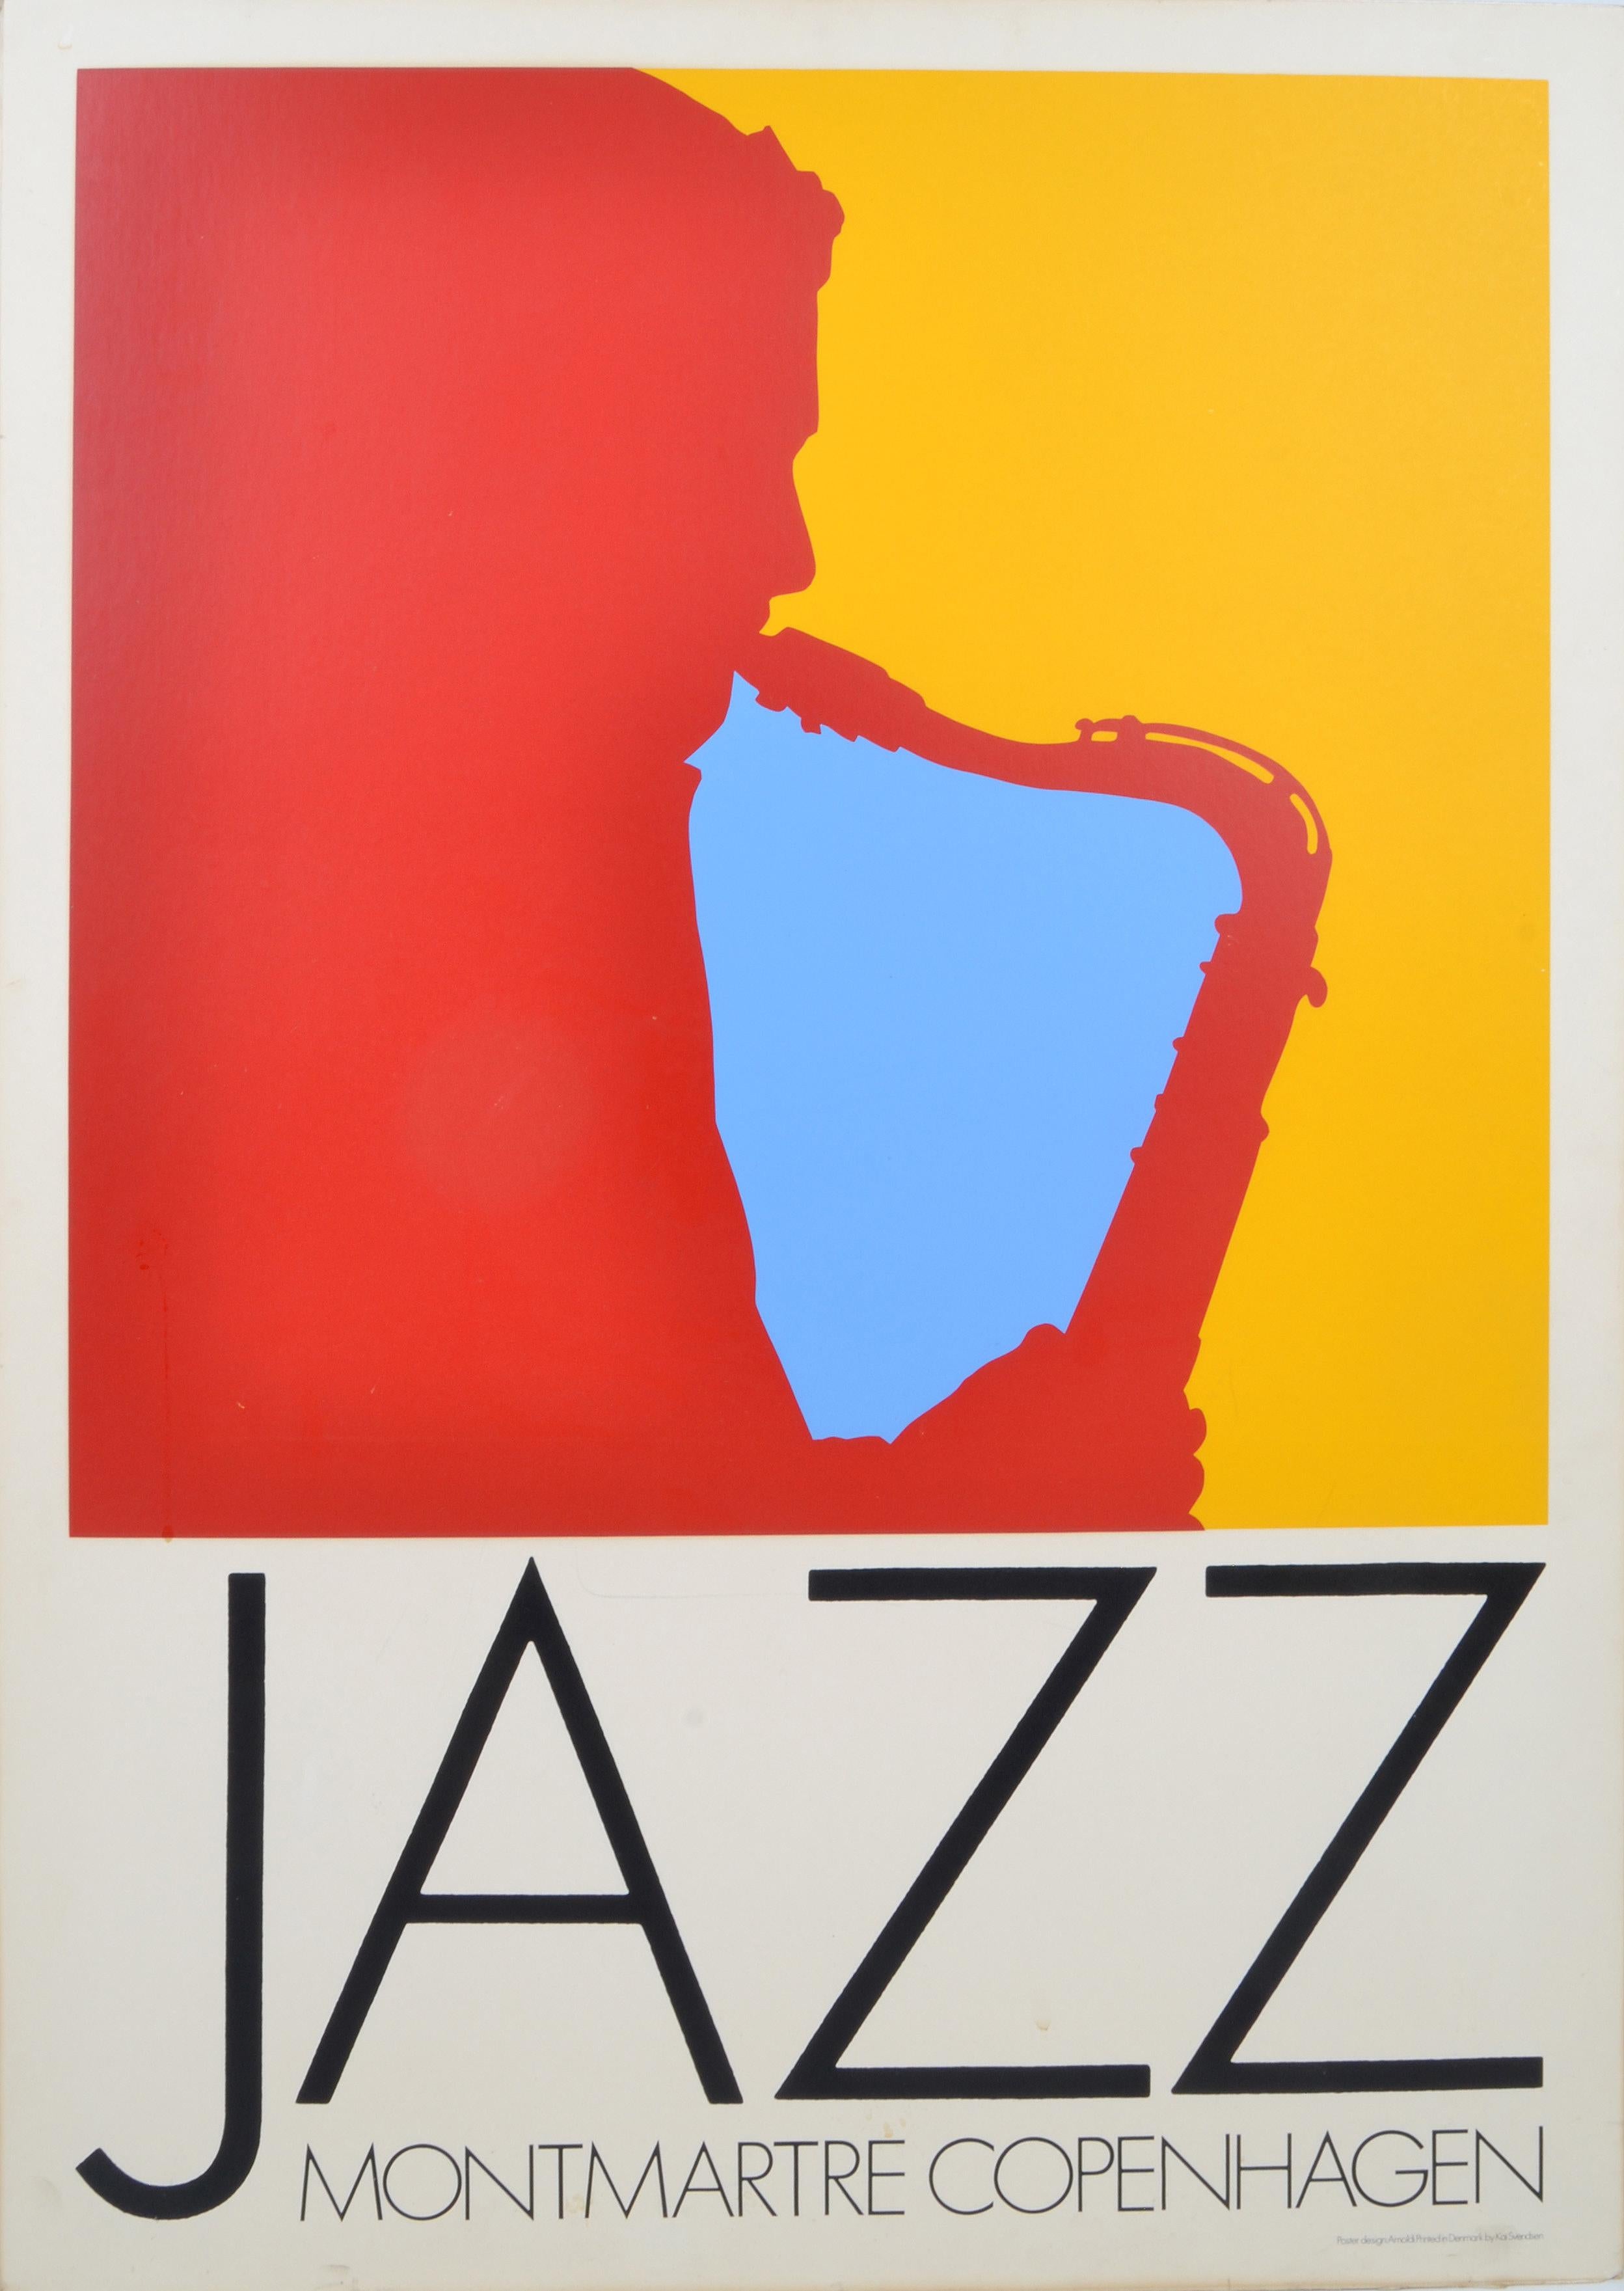 20th Century Vintage Print Copenhagen Jazz Montmartre by Per Arnoldi